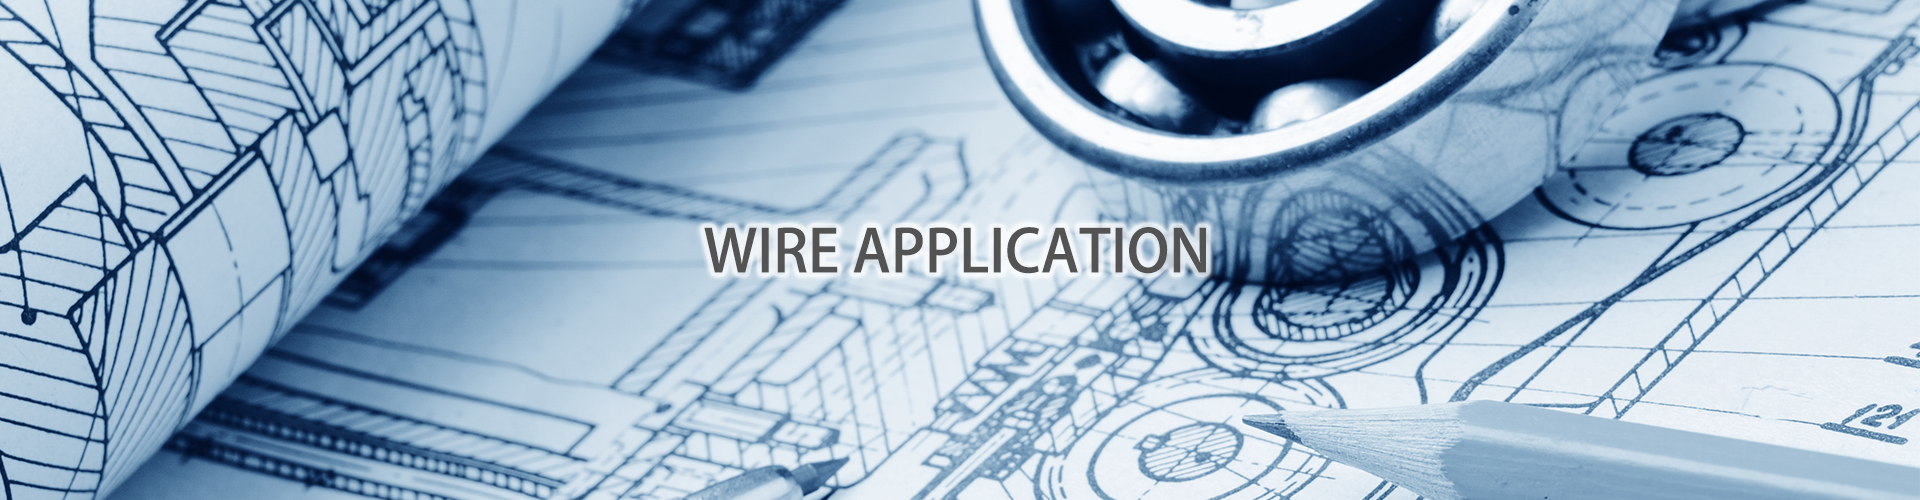 電線電纜應用產業 wire and cable application